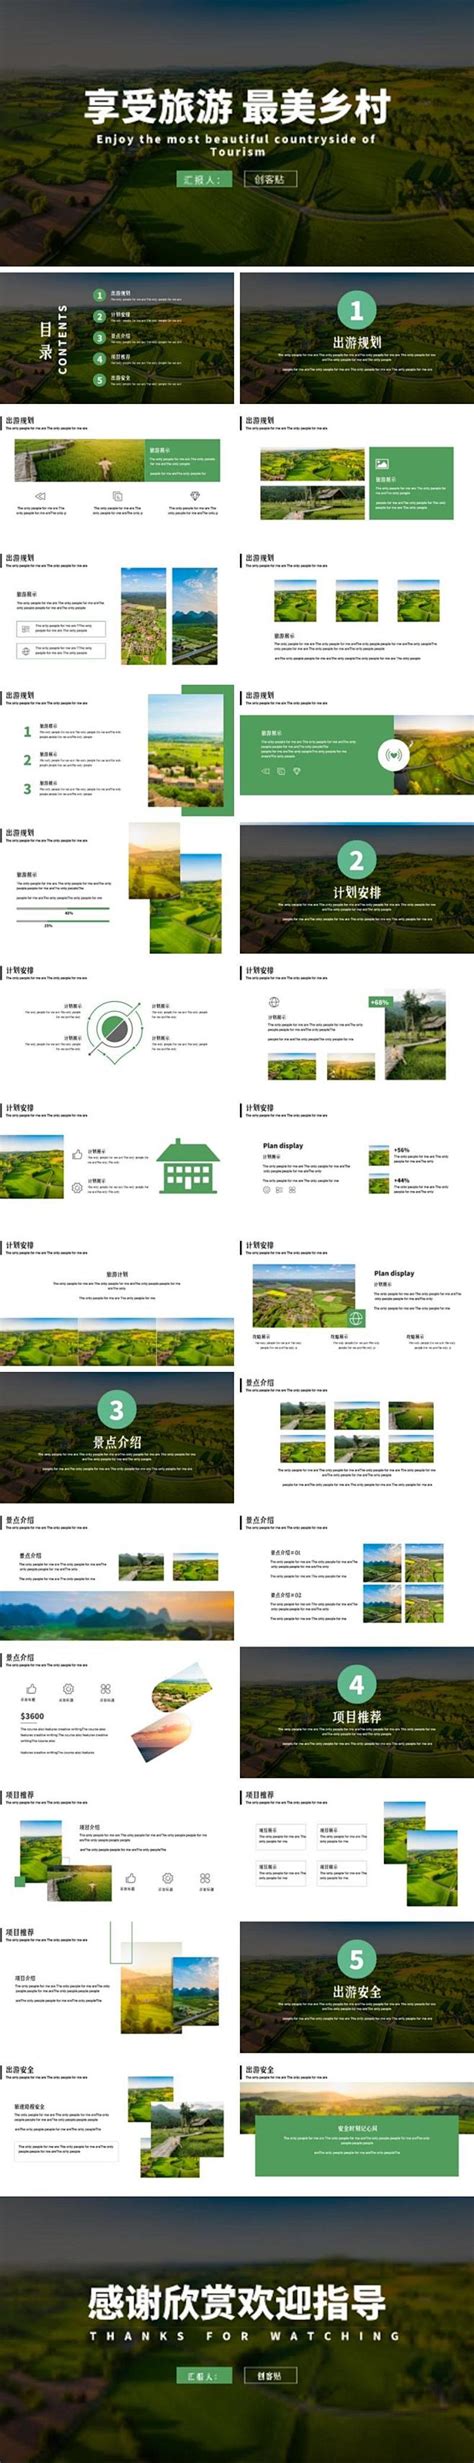 乡村旅游景观规划设计方案文本 272P免费下载 - 景观规划设计 - 土木工程网